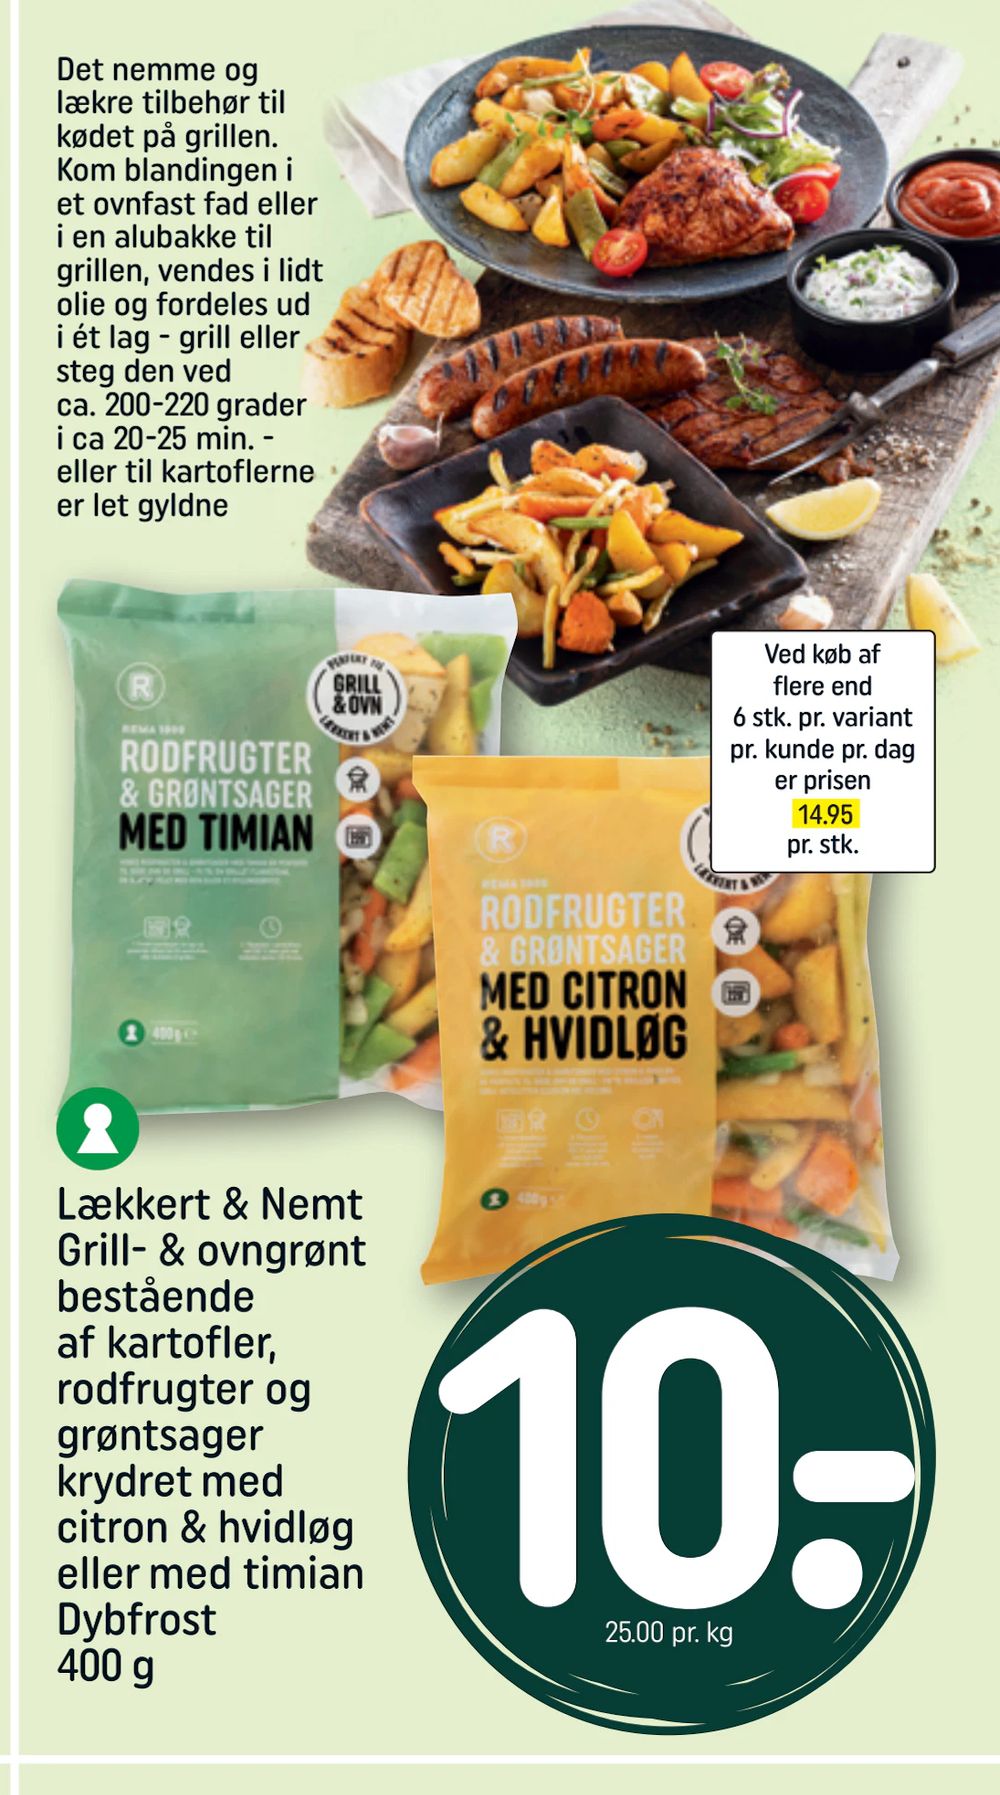 Tilbud på Lækkert & Nemt Grill- & ovngrønt bestående af kartofler, rodfrugter og grøntsager krydret med citron & hvidløg eller med timian Dybfrost 400 g fra REMA 1000 til 10 kr.